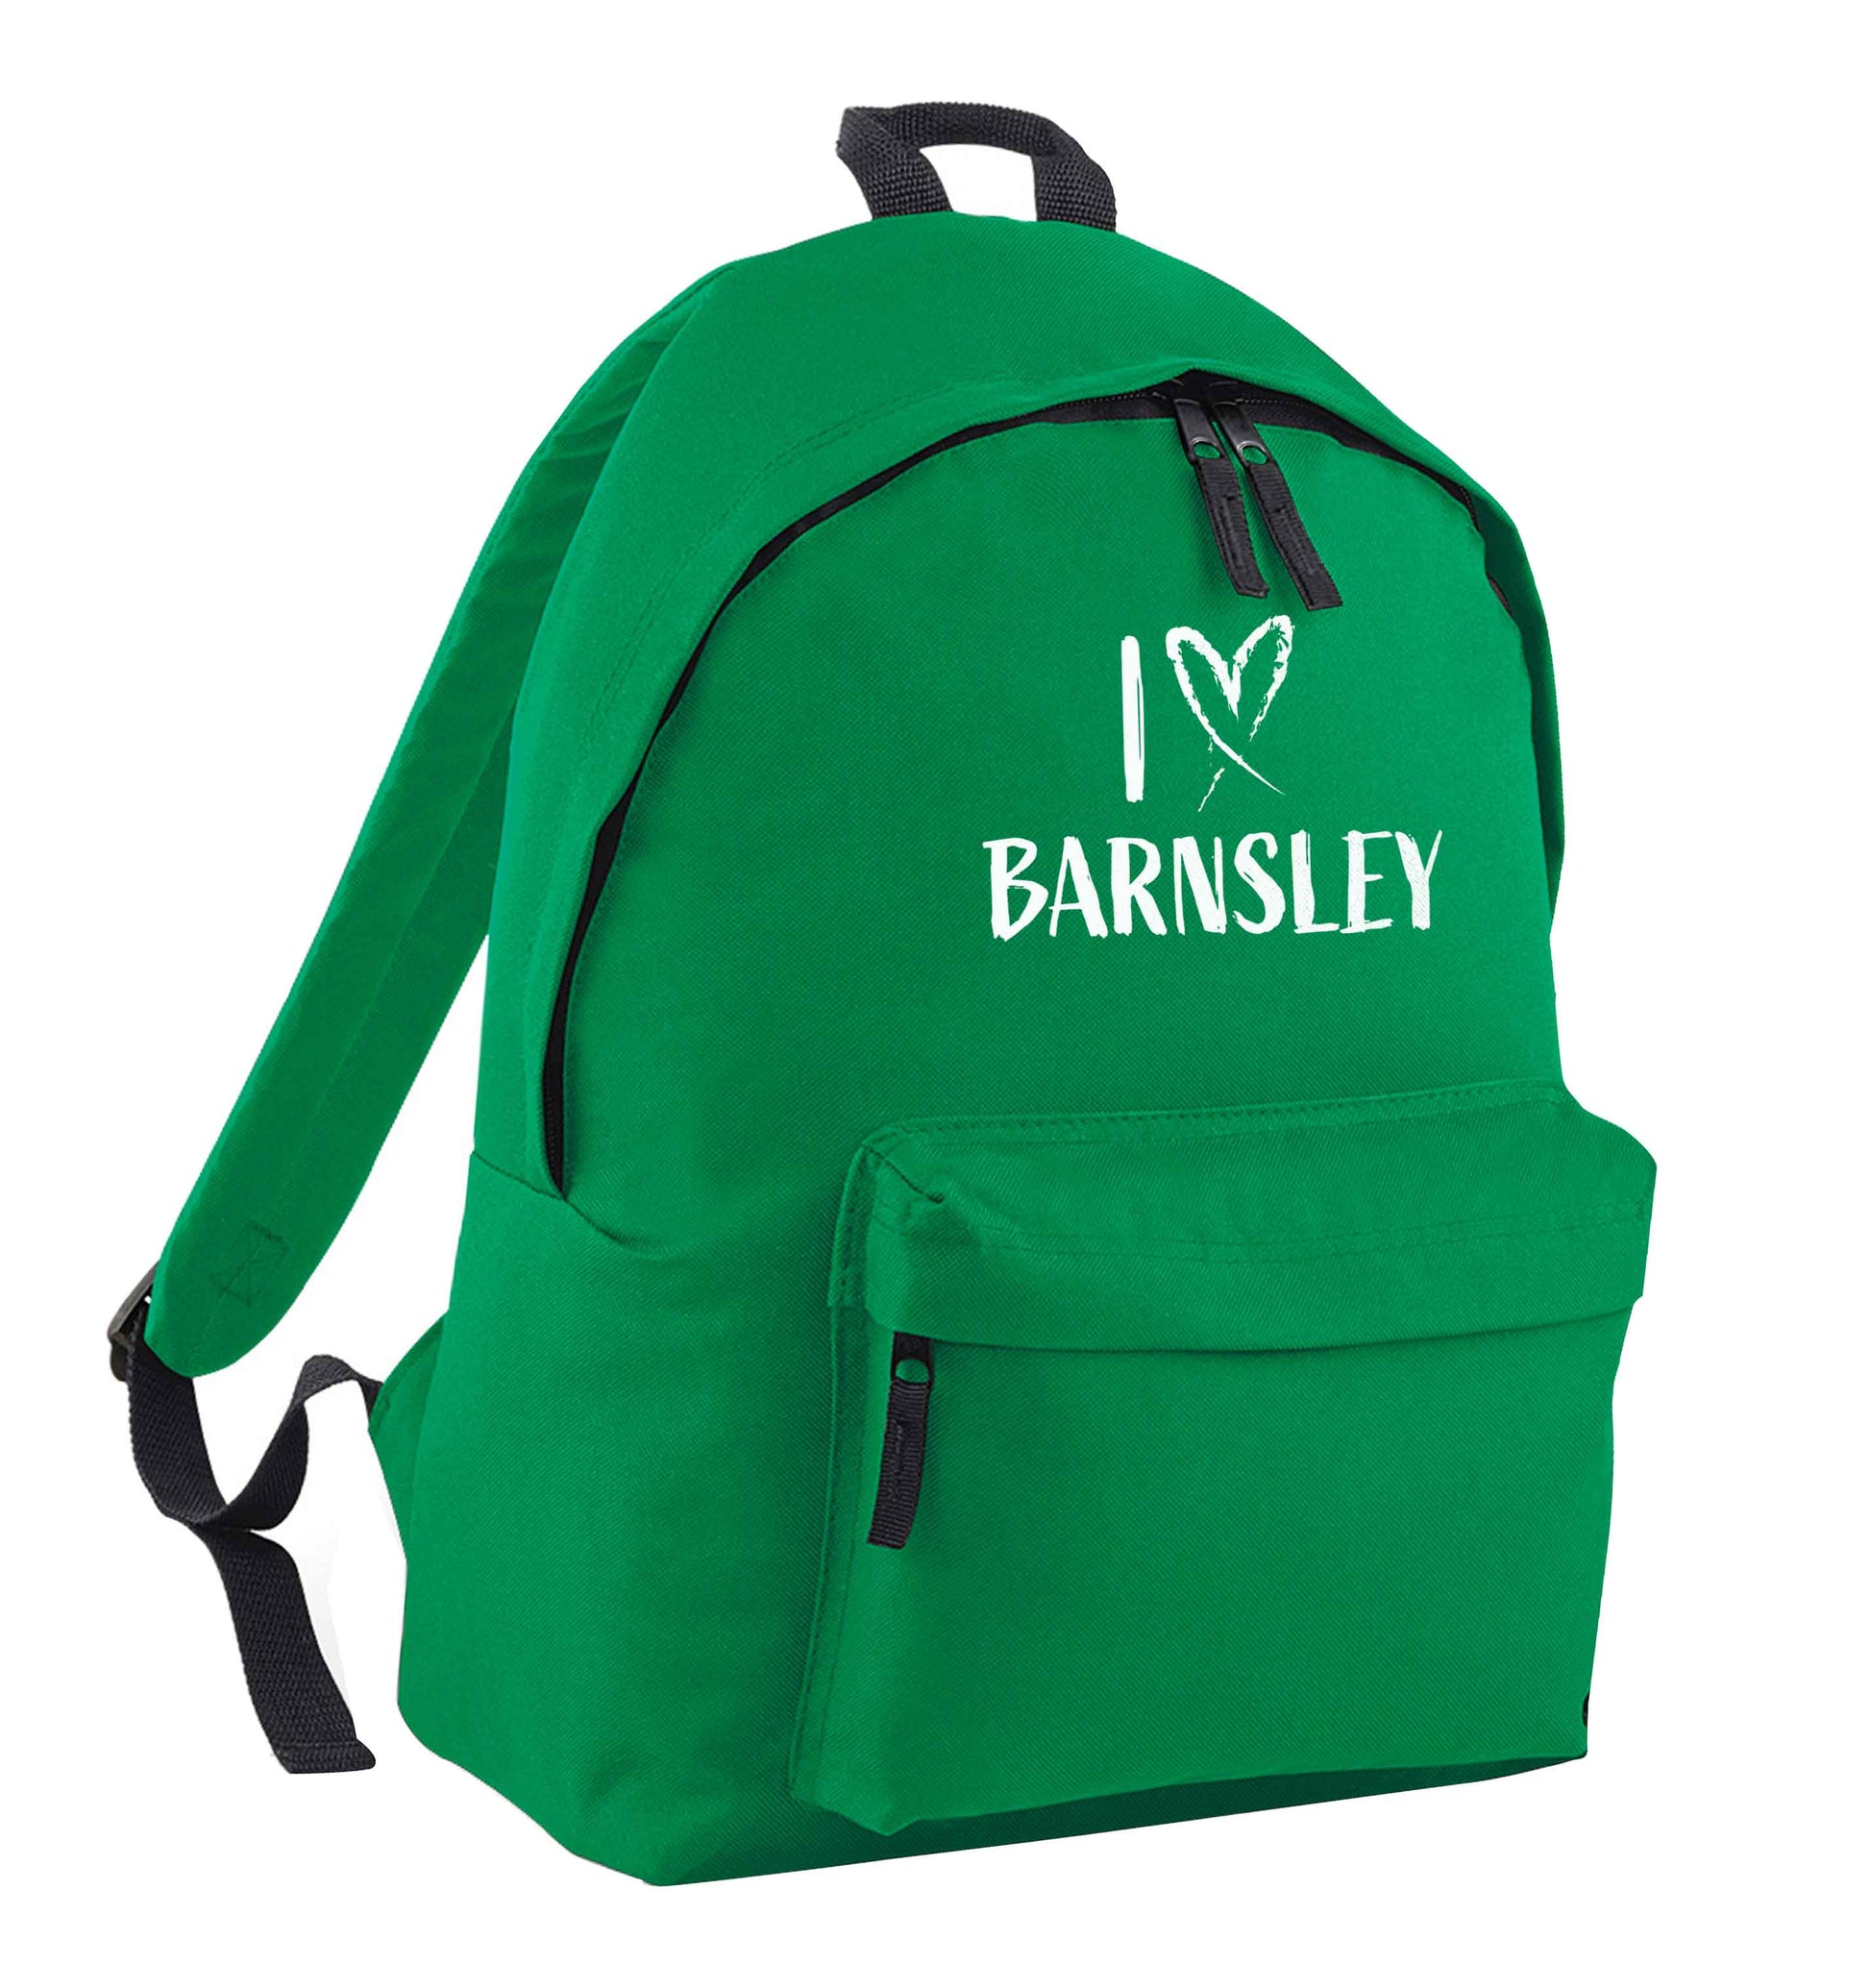 I love Barnsley green adults backpack